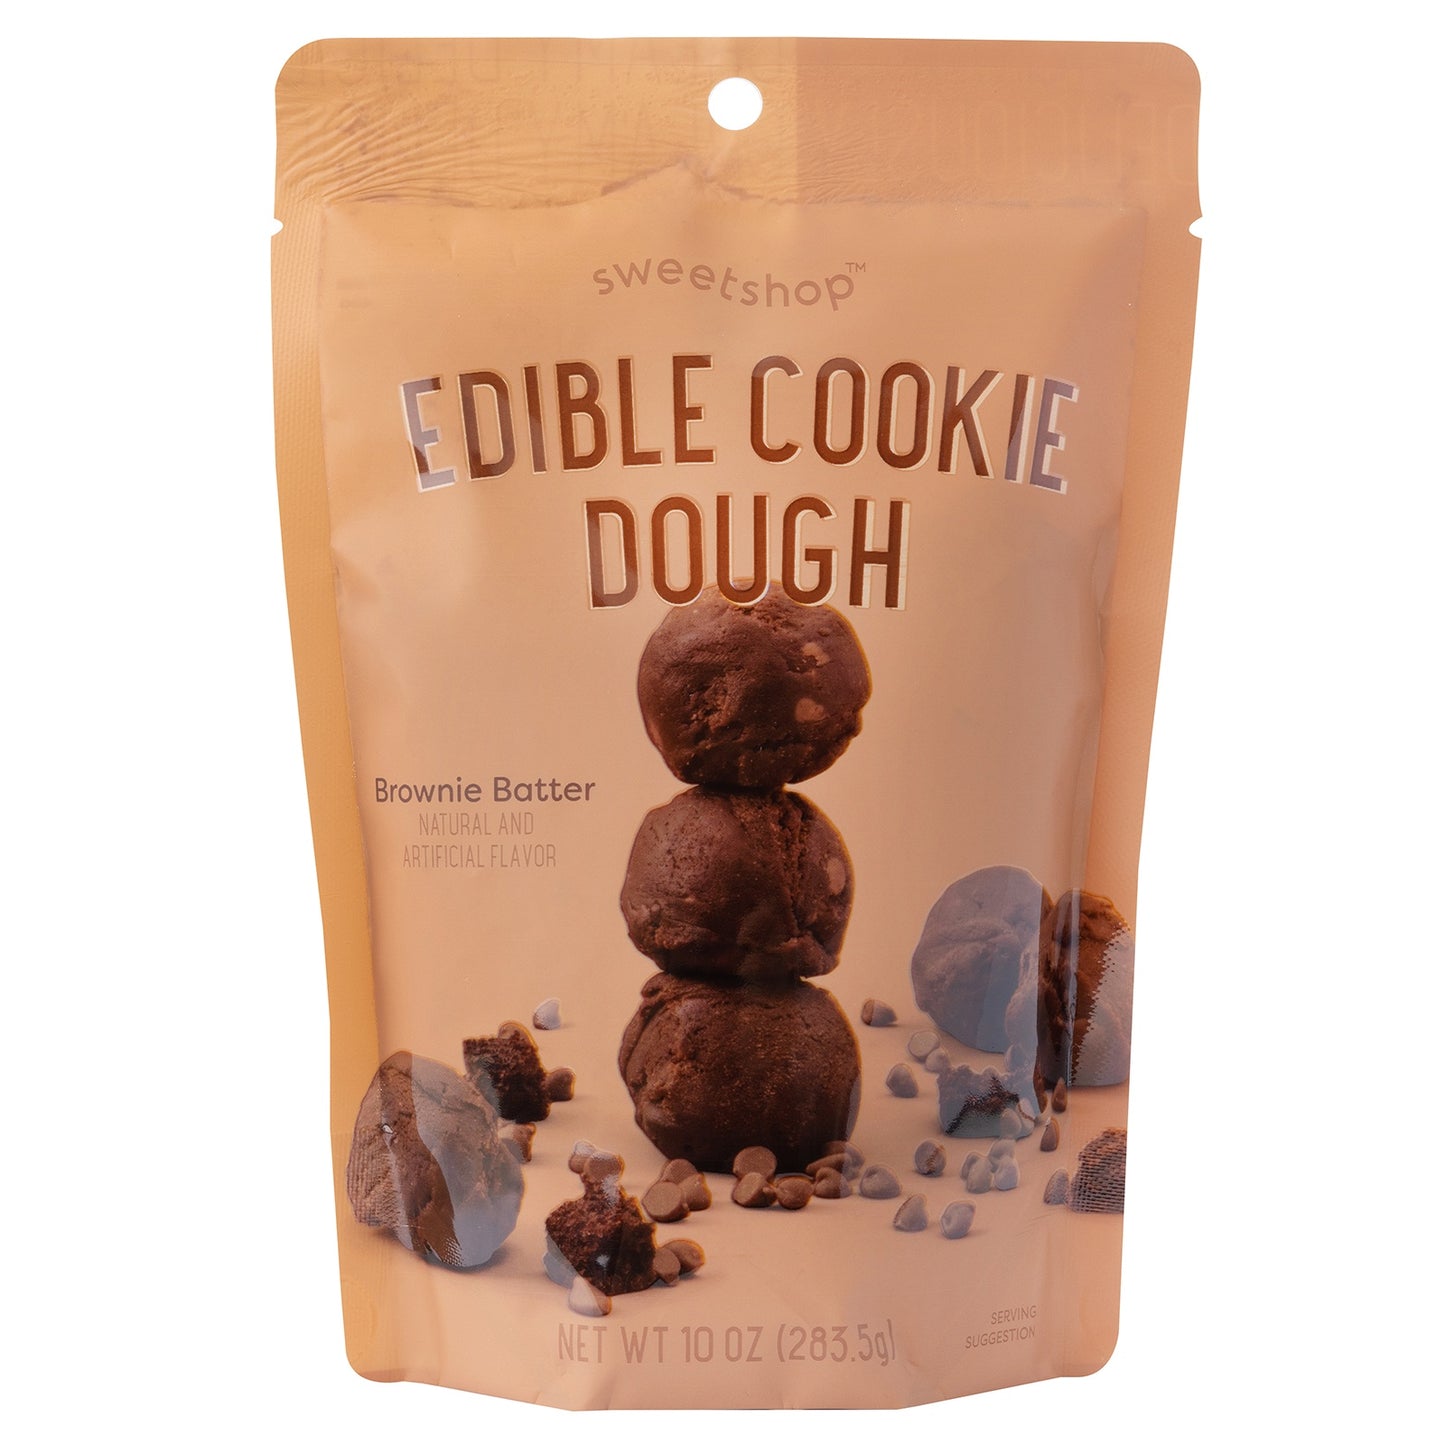 Sweethshop Edible Cookie Dough 10oz-Brownie Batter